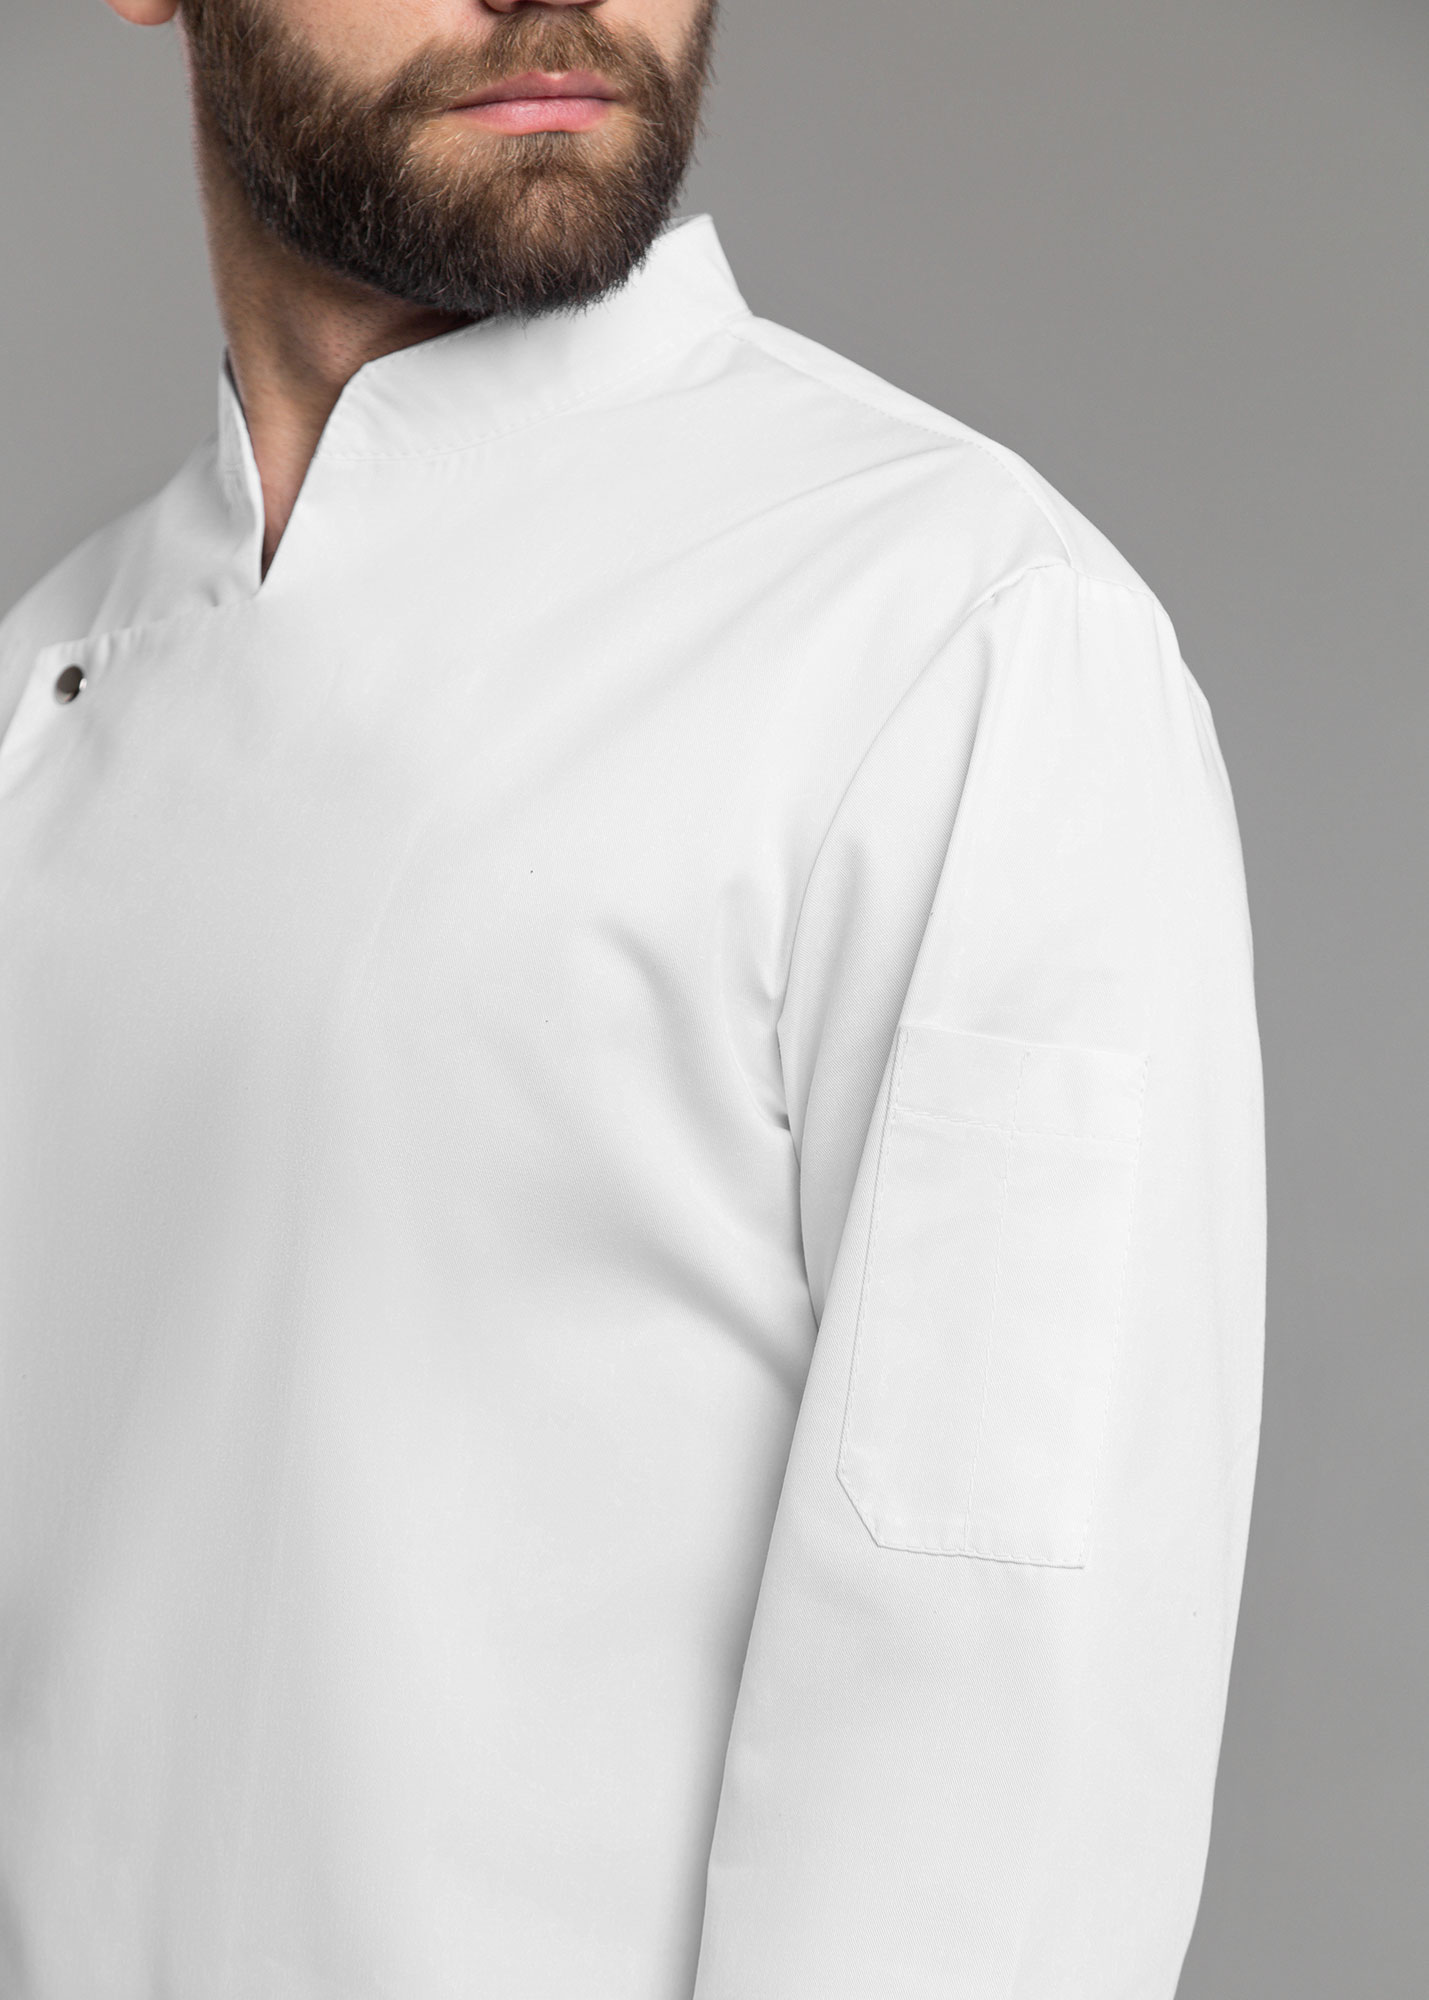 Куртка для повара №4 из смесовой ткани - фото 9